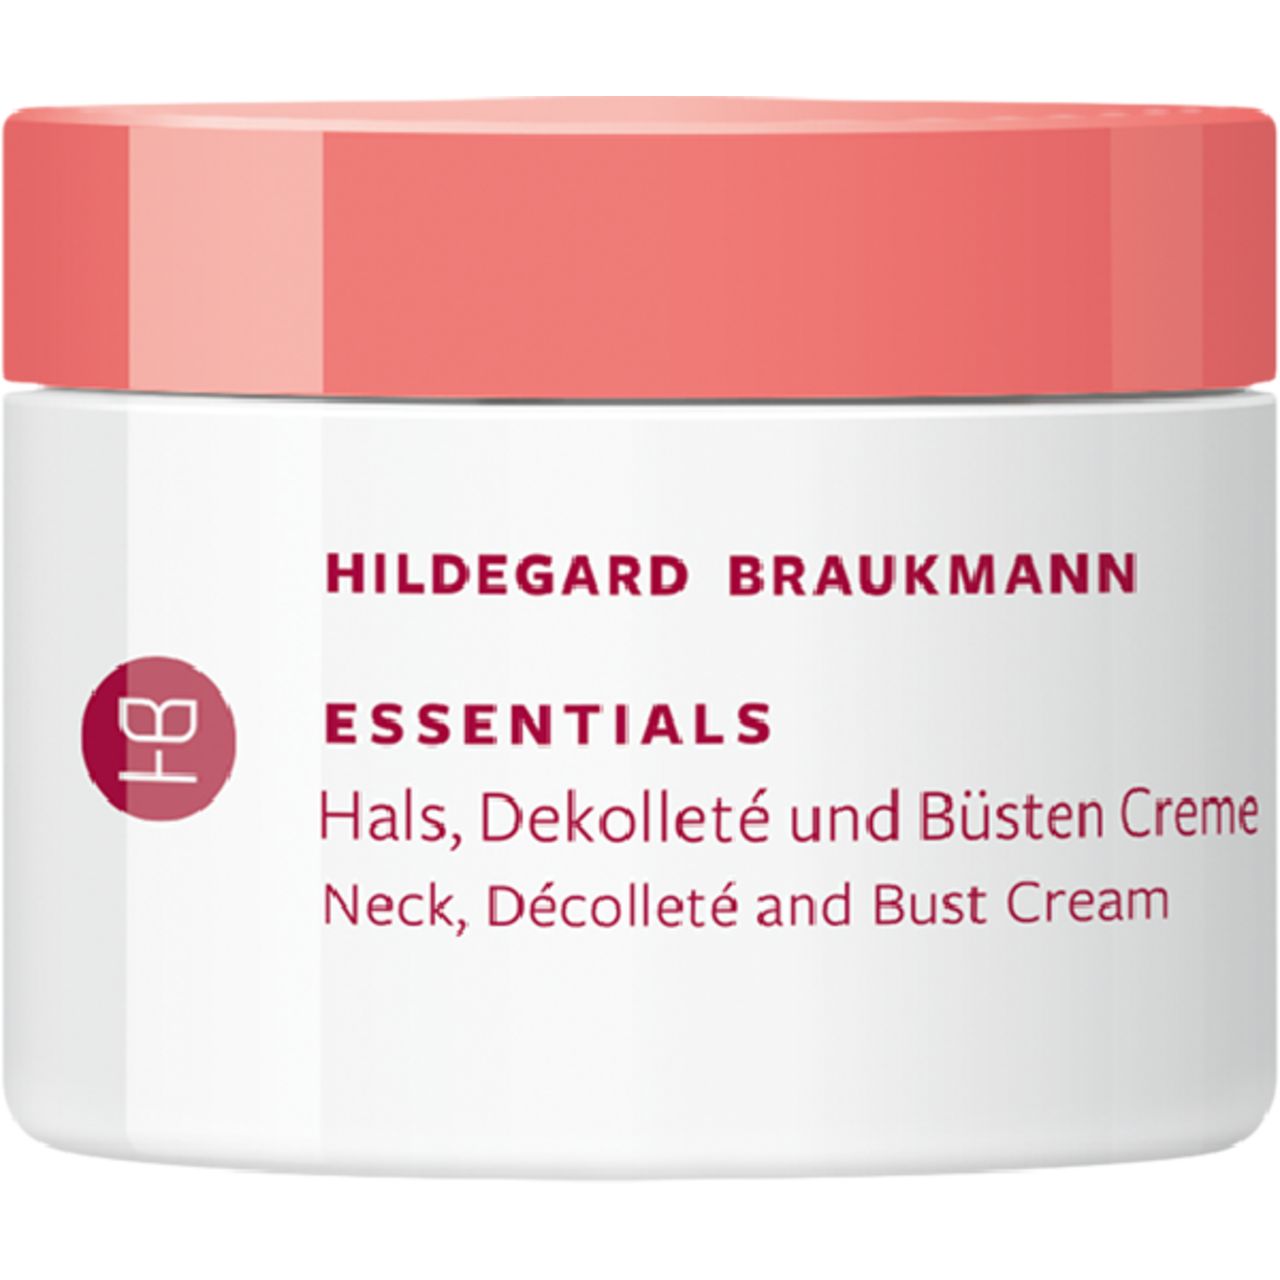 Hildegard Braukmann, Essentials Hals, Dekolleté und Büsten Creme